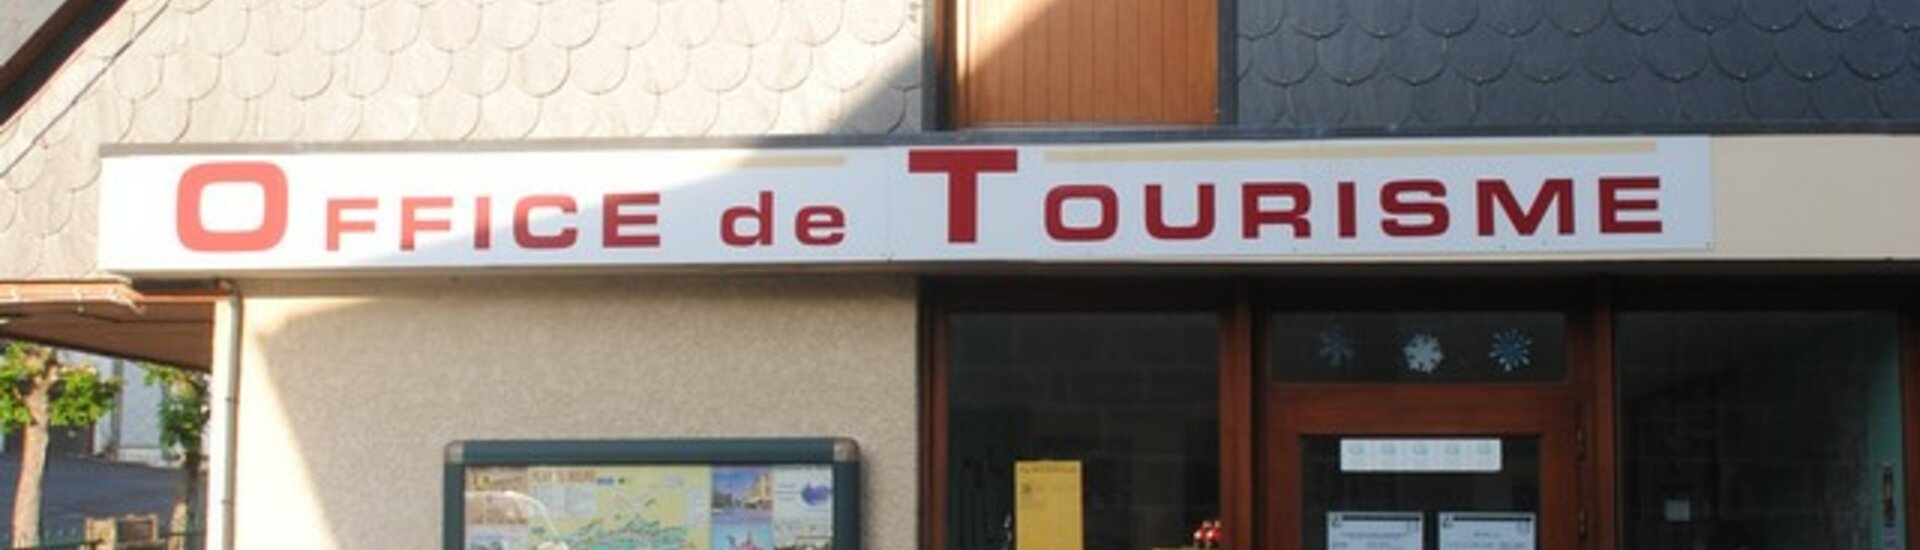 Office de Tourisme 